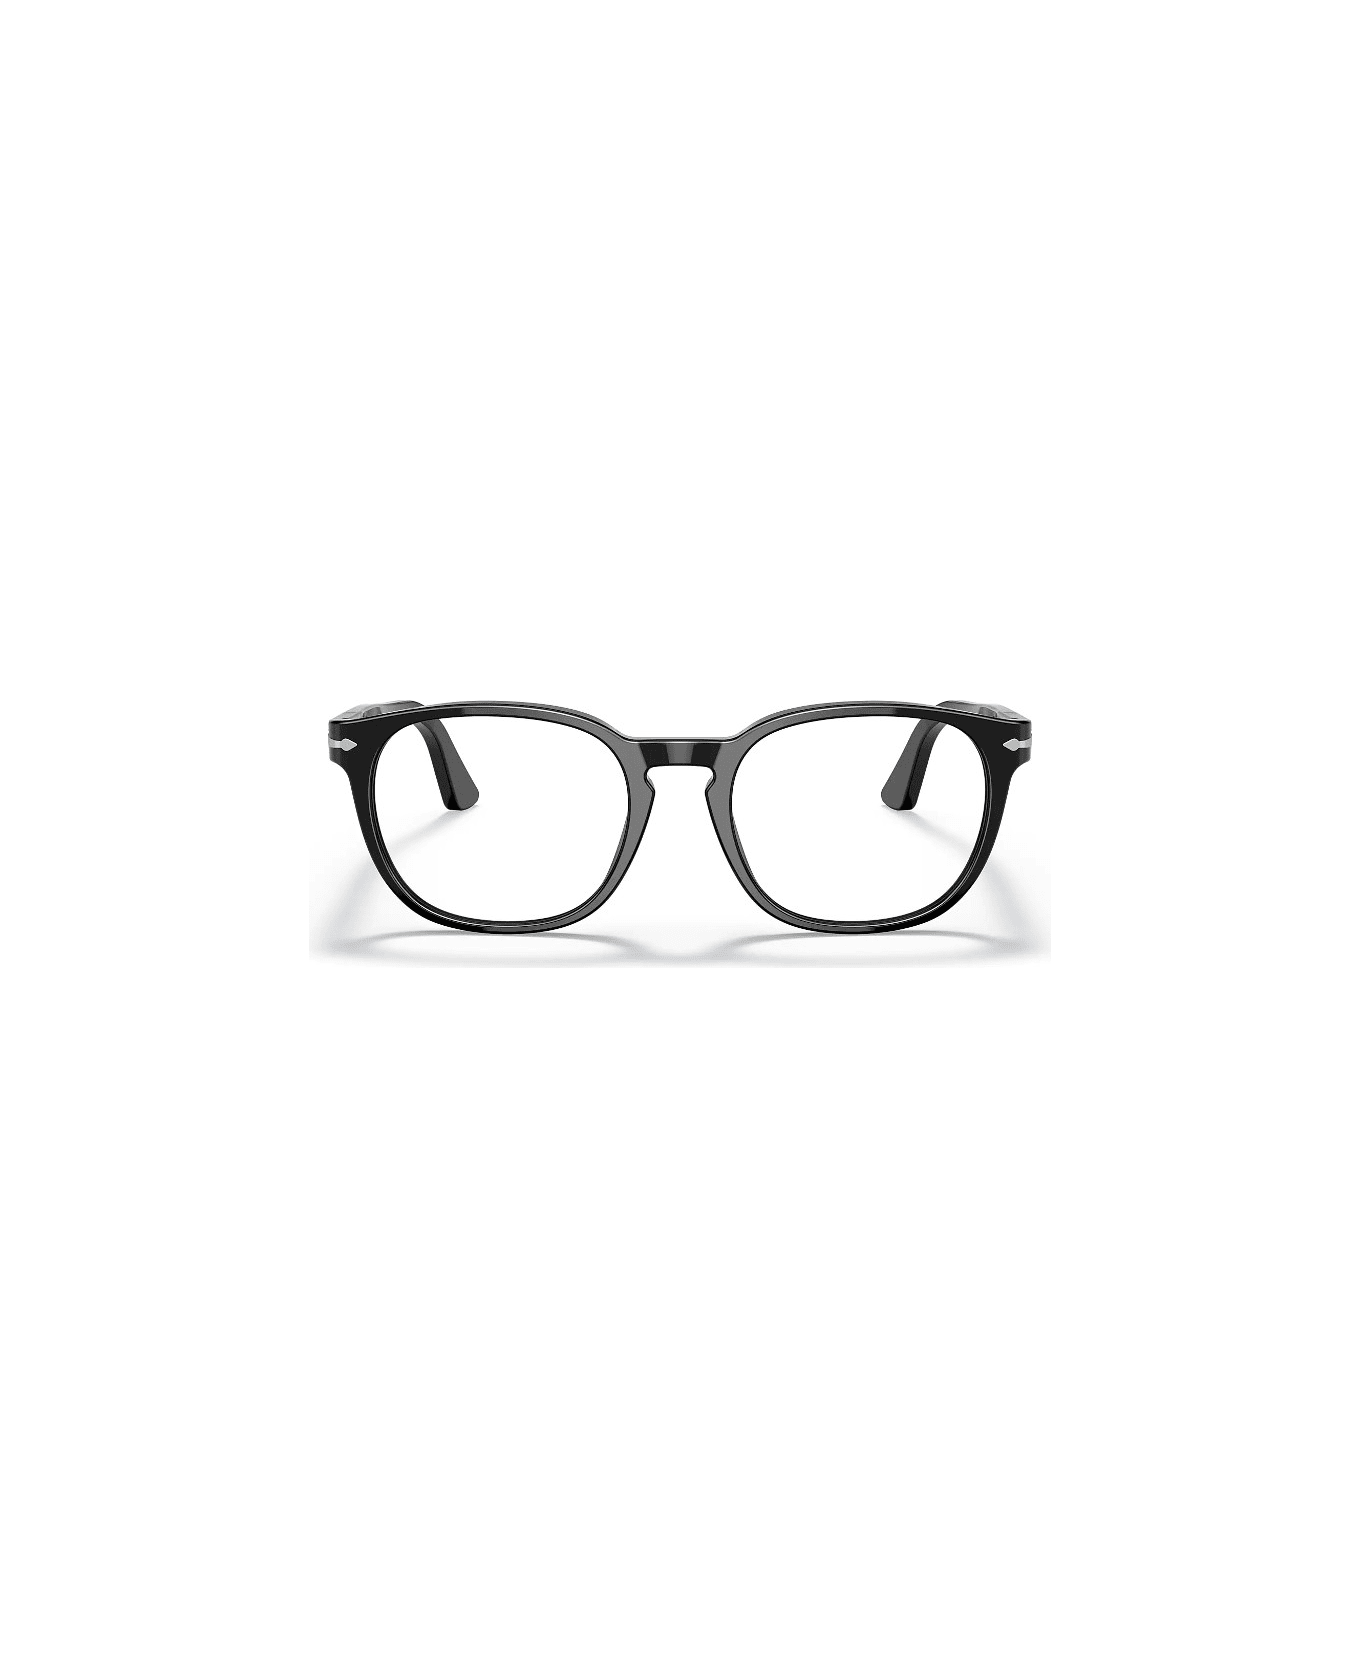 Persol Po3283 95 Glasses - Nero アイウェア